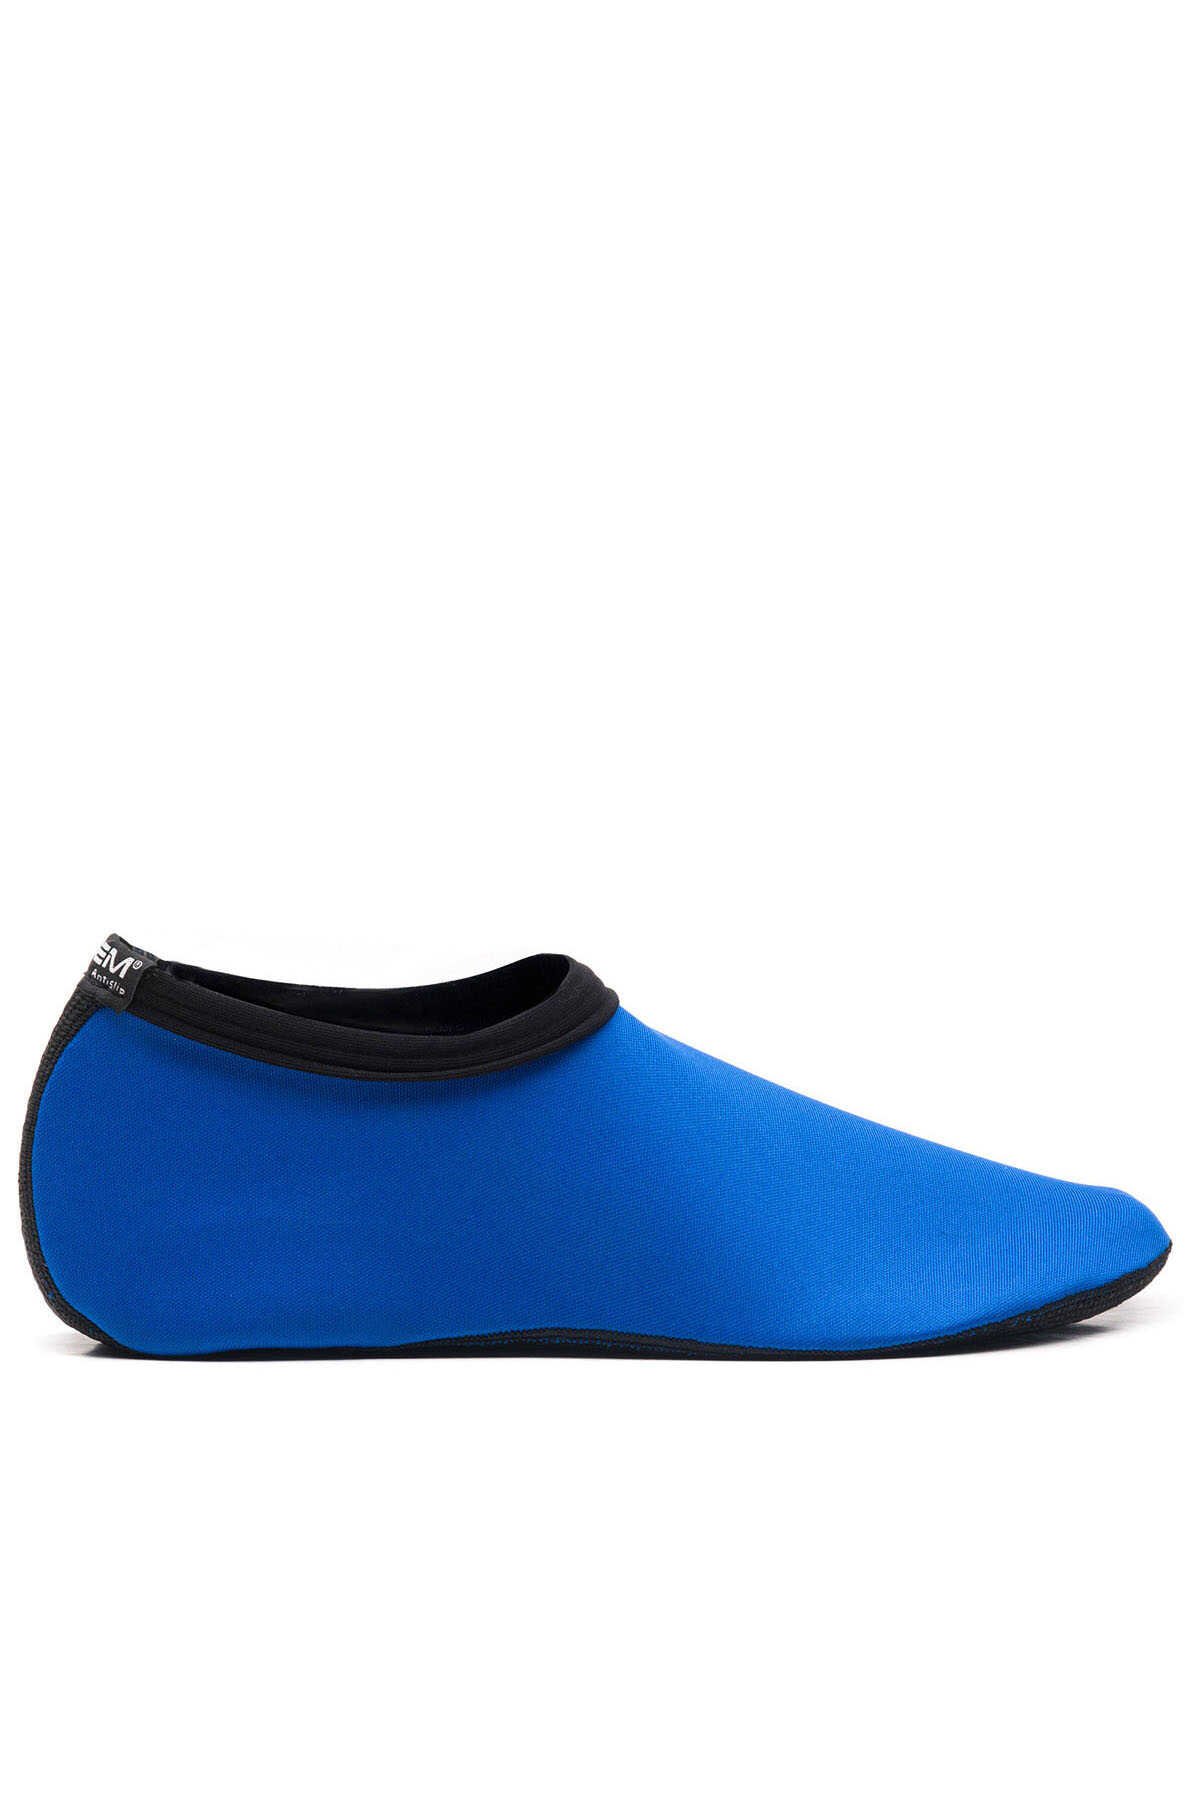 ESEM - ESEM SAVANA 2 Deniz Ayakkabısı Kadın Ayakkabı Mavi